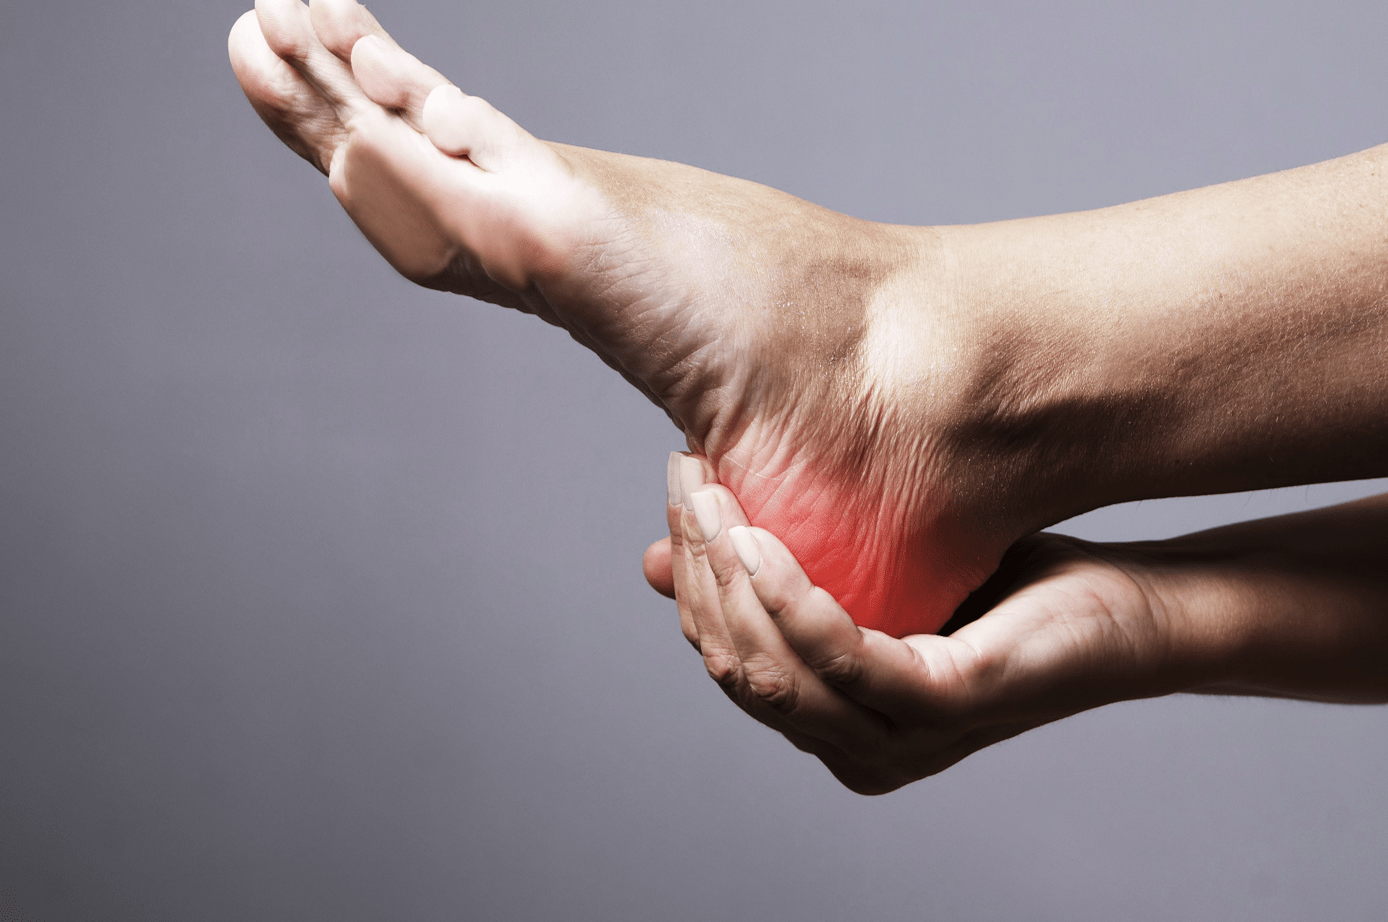 Topuk Ağrısı Sendromu (Heel Pain Syndrome, HPS)